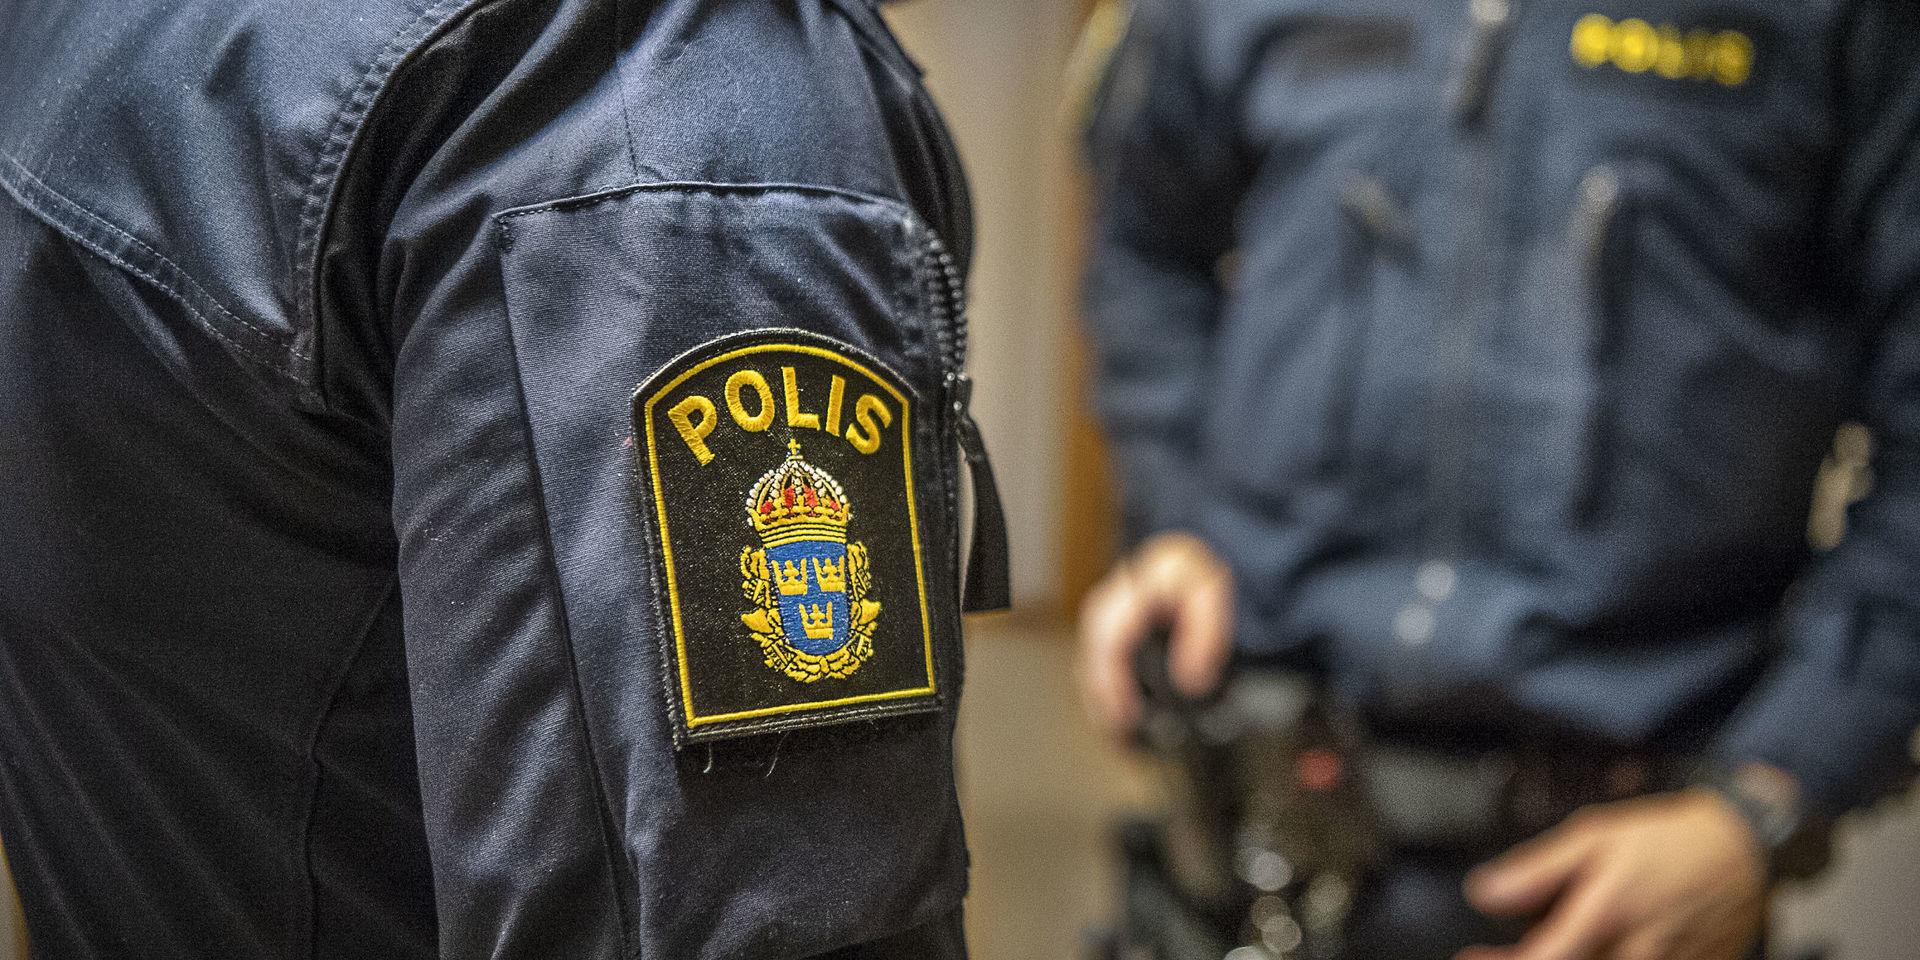 Två män jagades till fots av polis genom centrala Mölndal under måndagseftermiddagen misstänkta för stöld. OBS: Genrebild. 